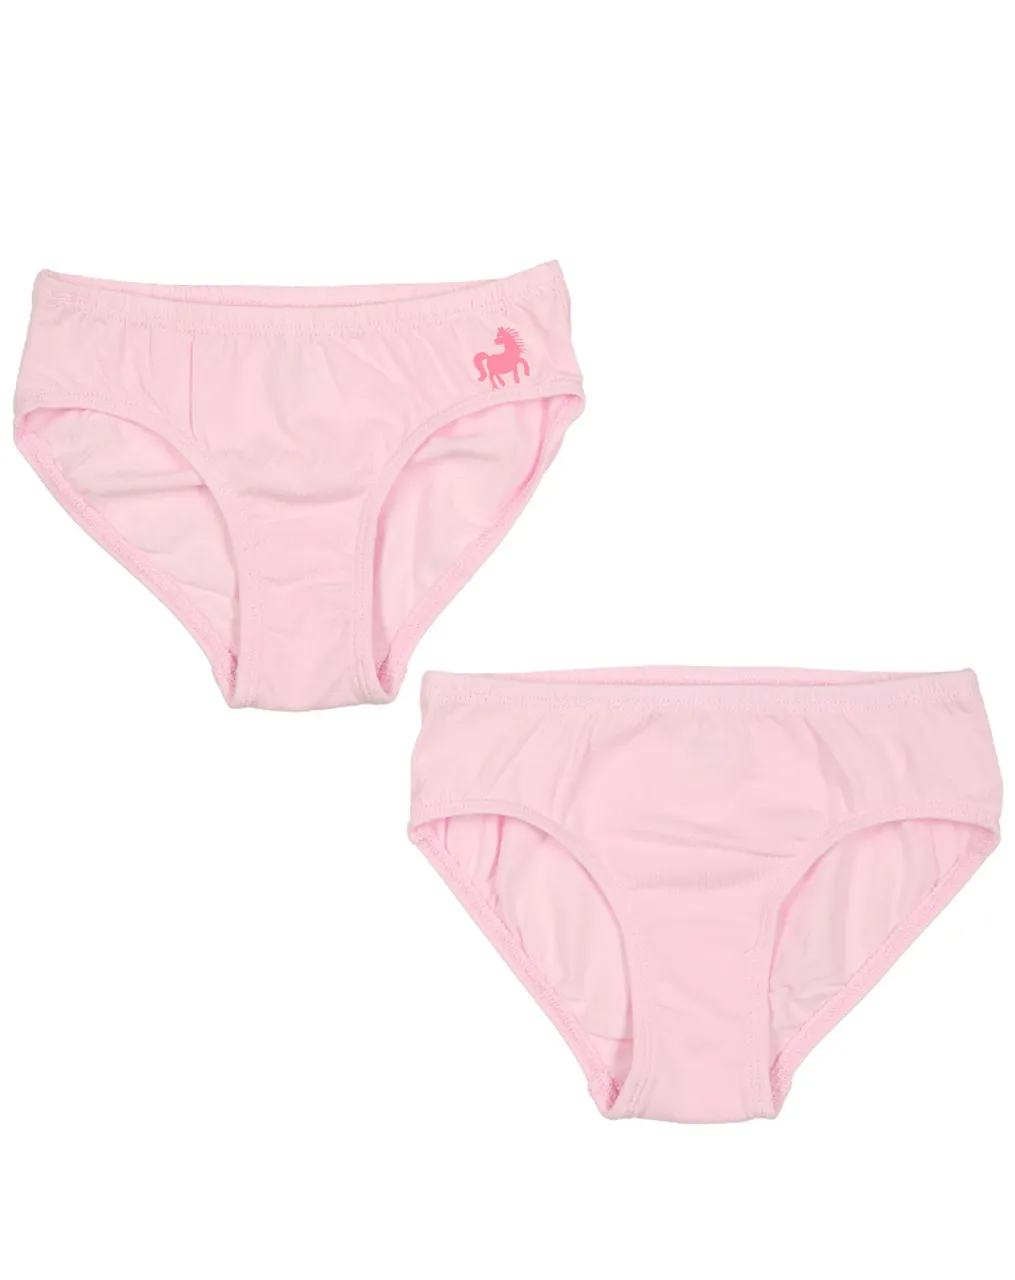 Slip CLASSICS – PFERD 5er Pack in rosa/weiß